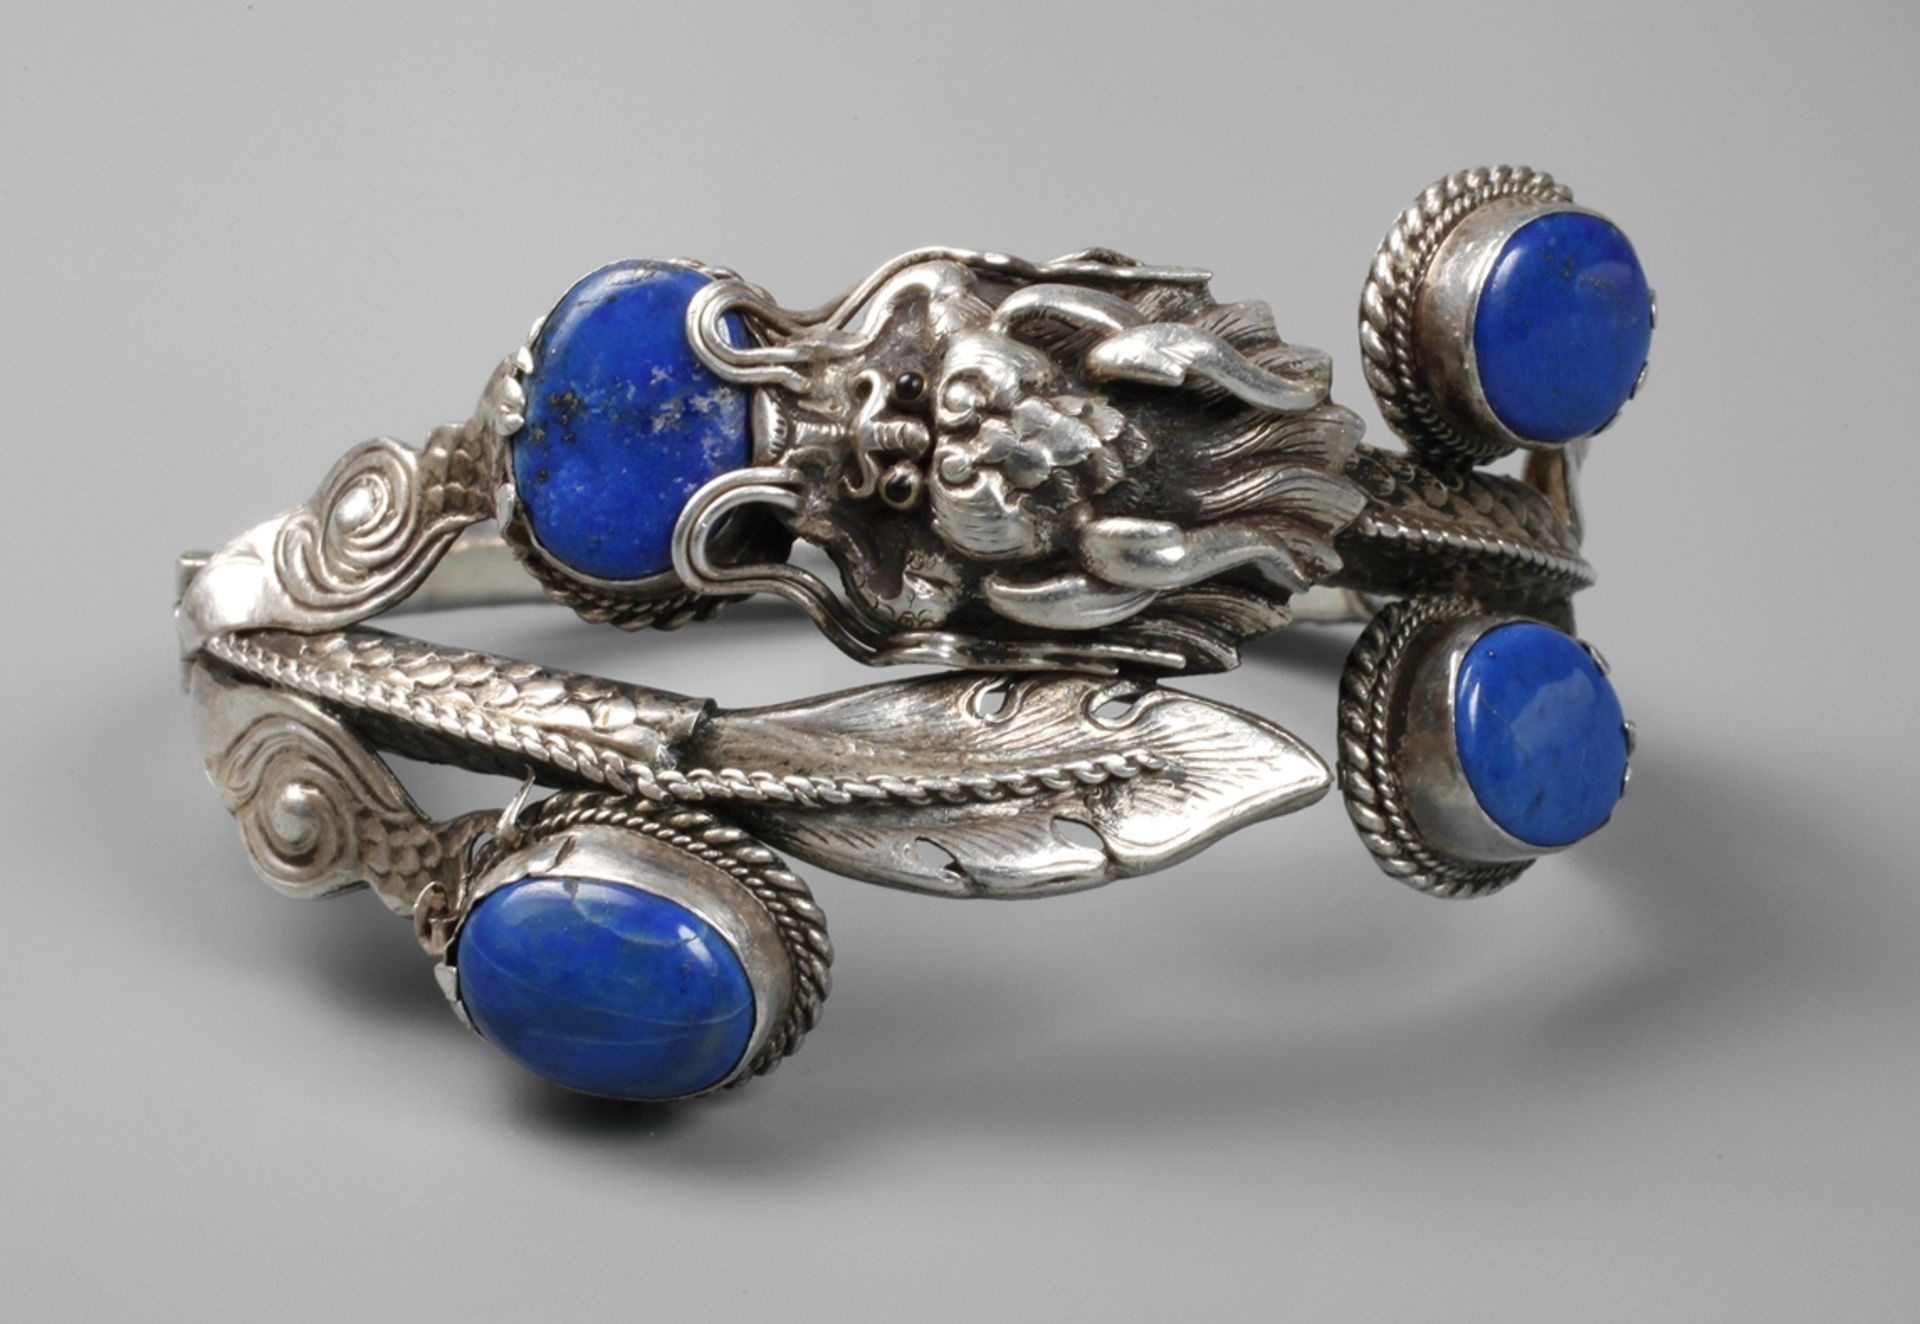 Bracelet with dragon motif